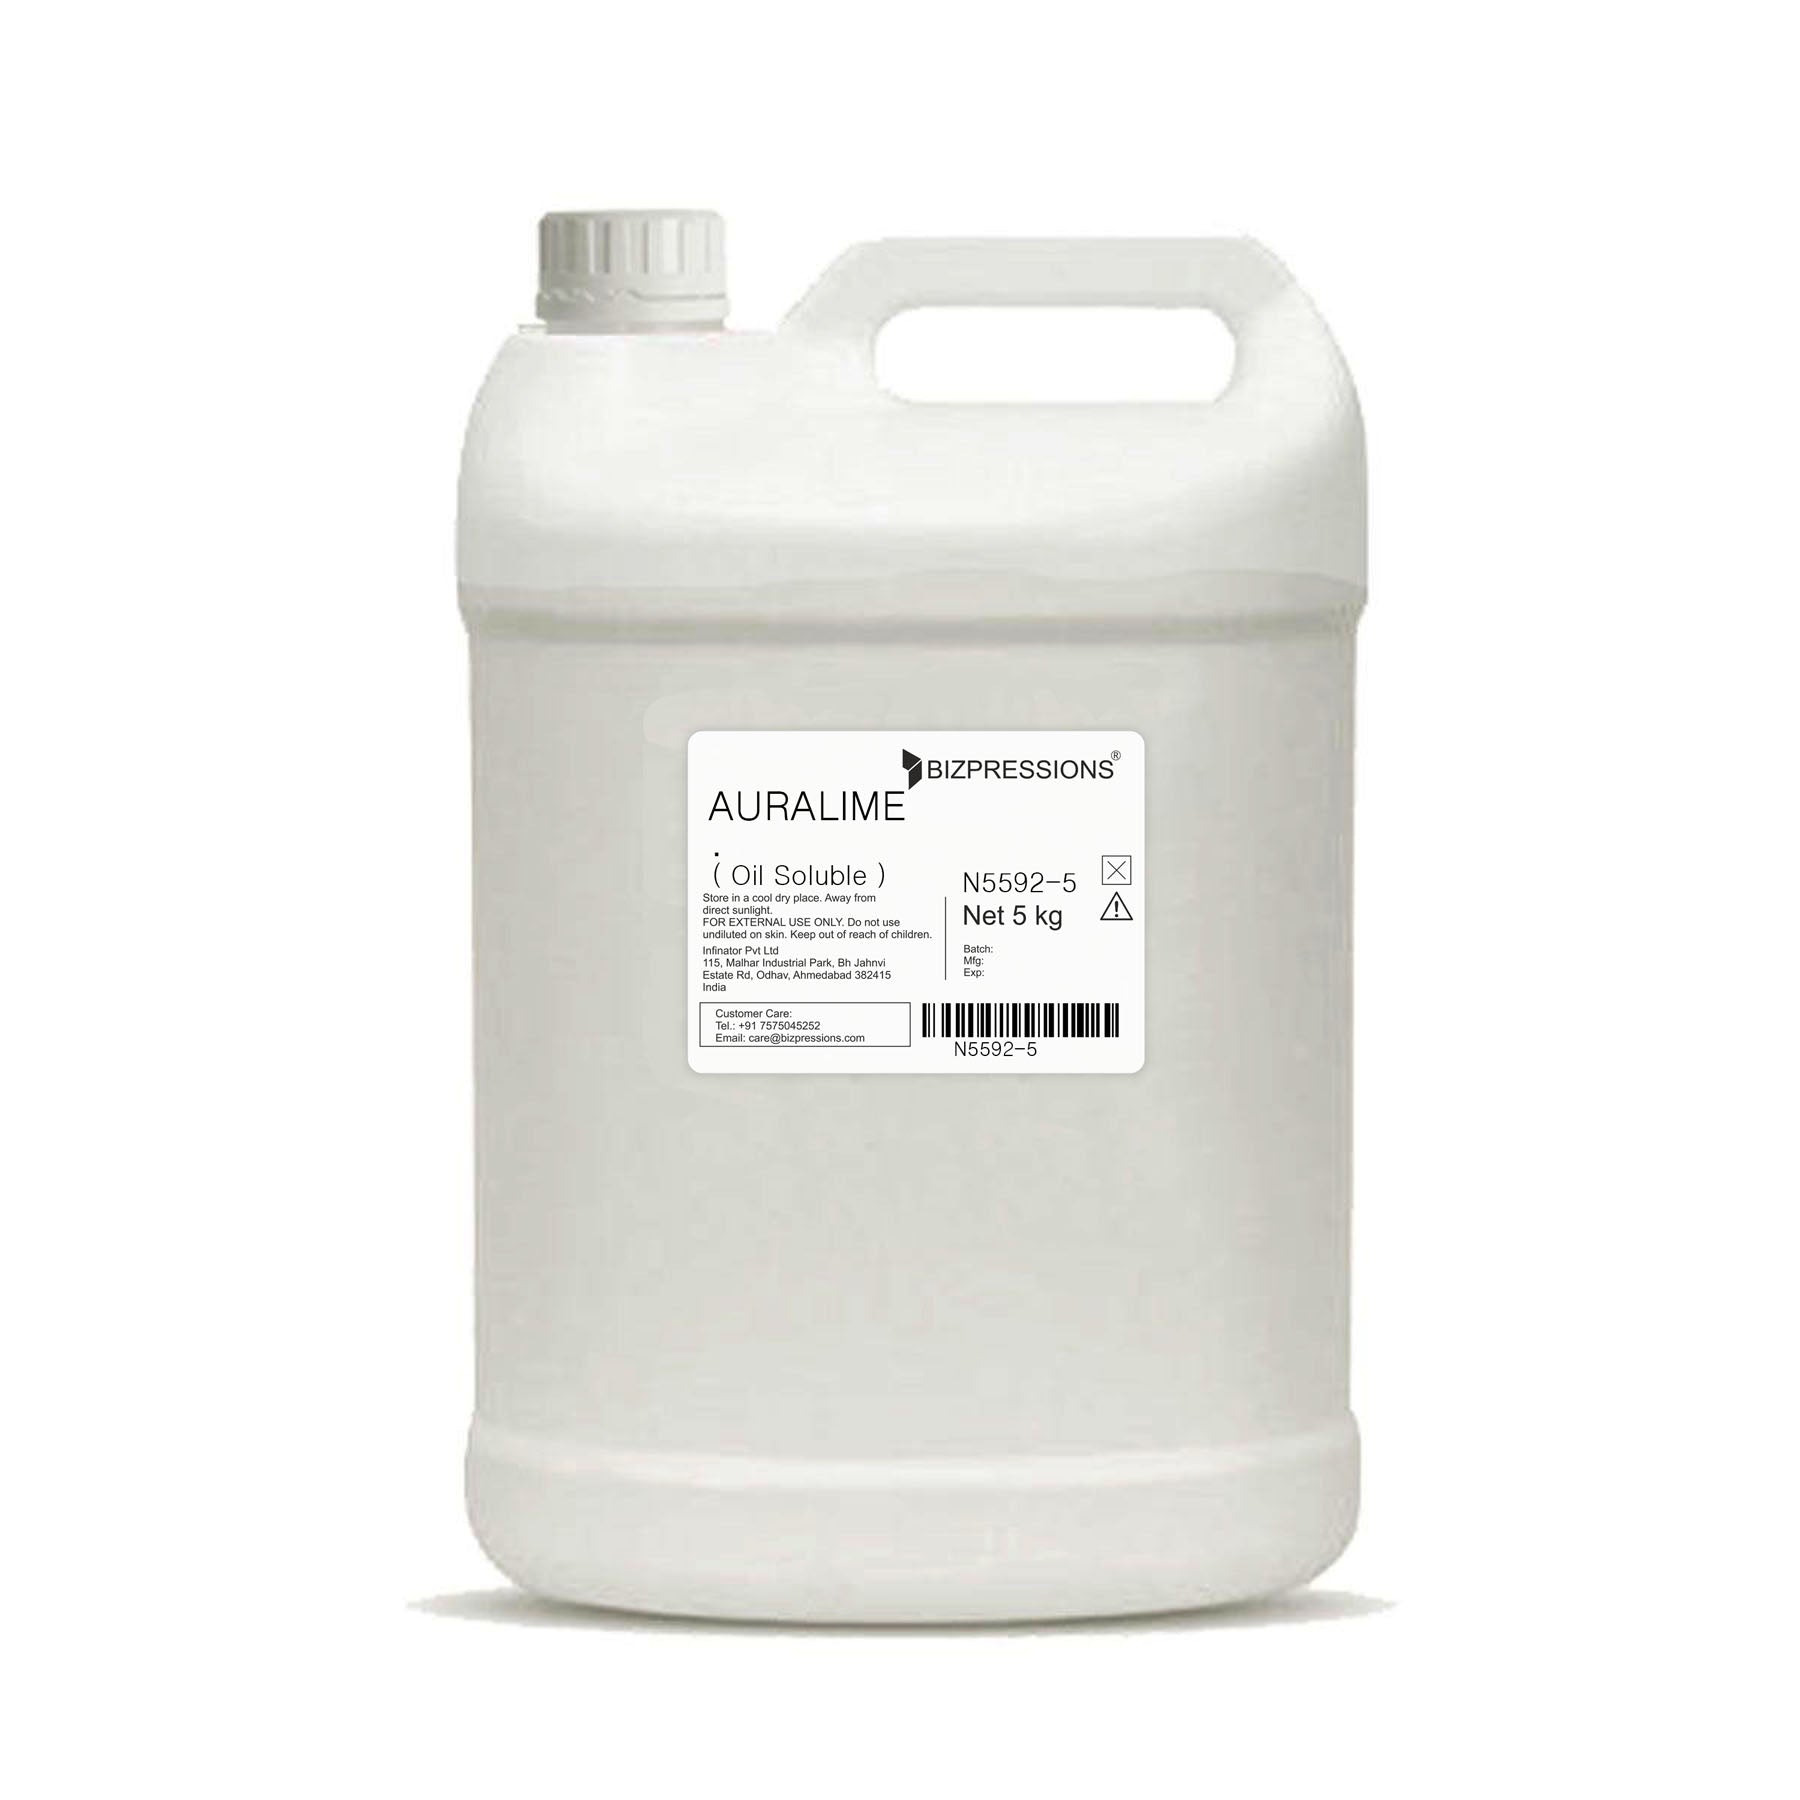 AURALIME - Fragrance ( Oil Soluble ) - 5 kg